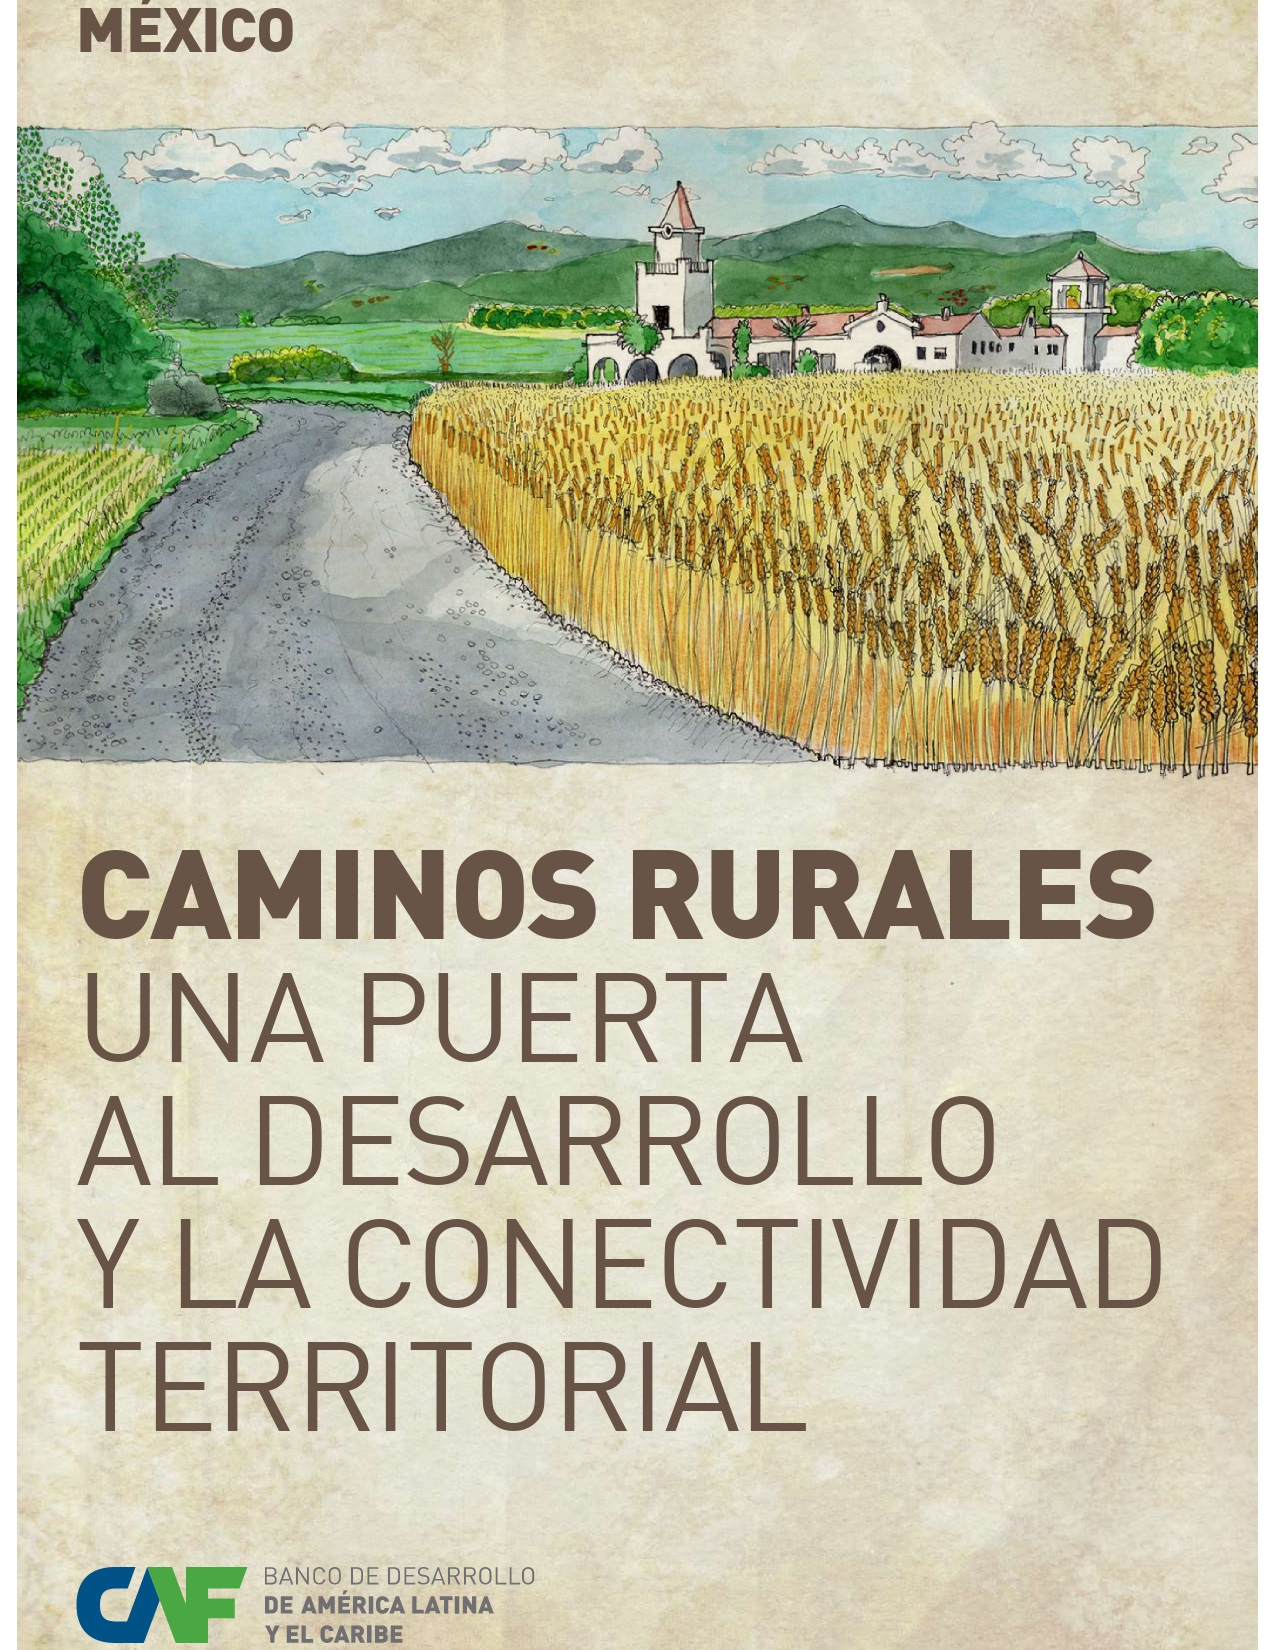 Caminos rurales, una puerta al desarrollo y la conectividad territorial / México